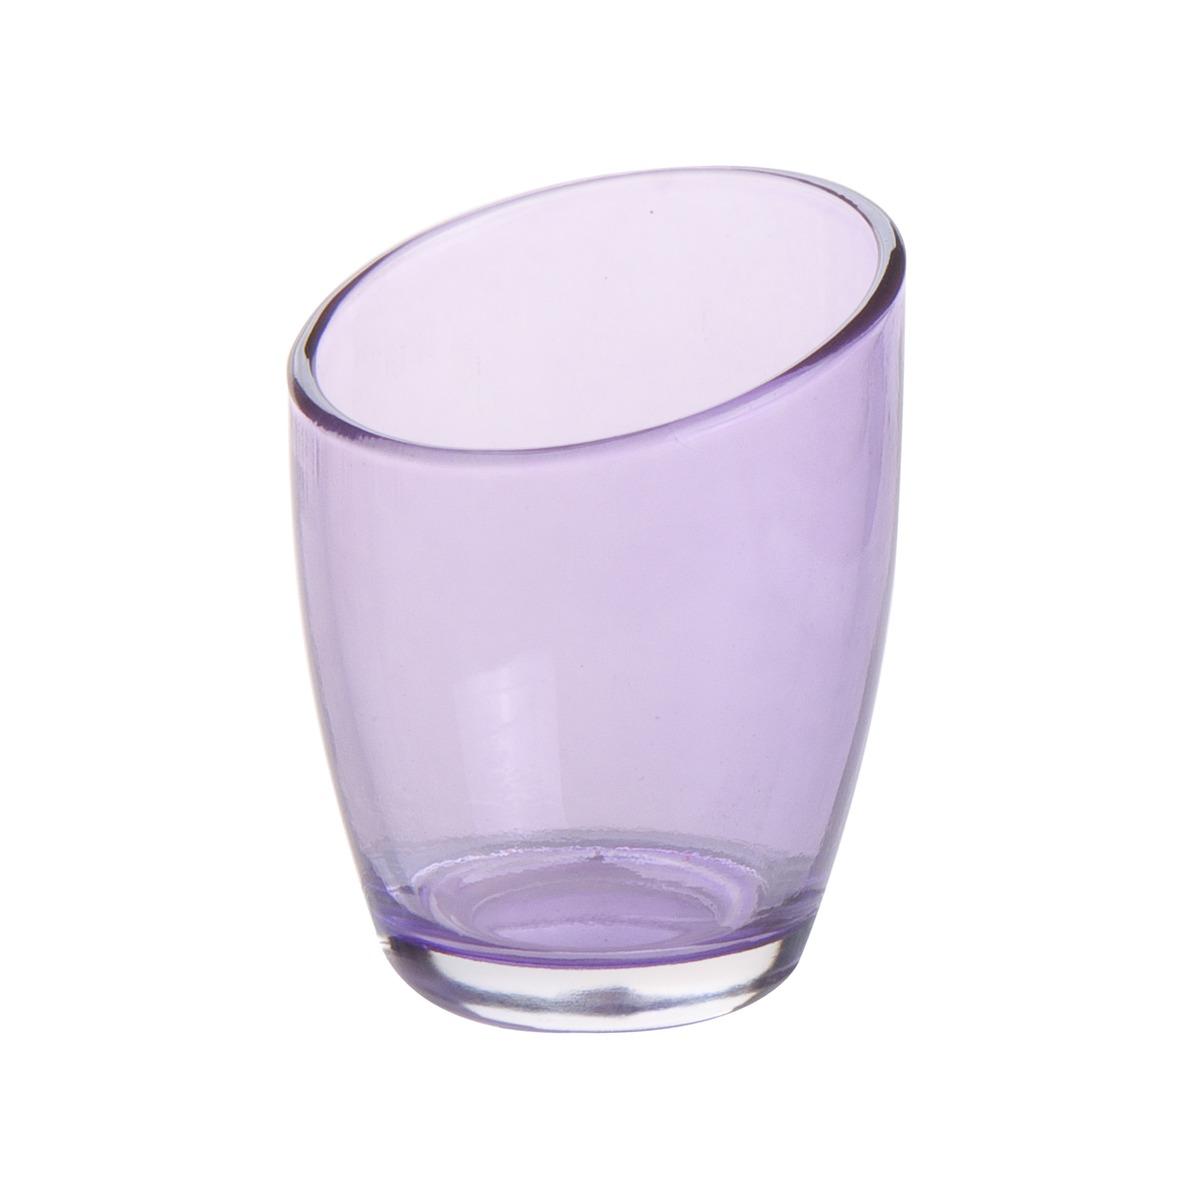 Photophore en verre - Diamètre 6,5 cm - Hauteur 8,8 cm - Violet